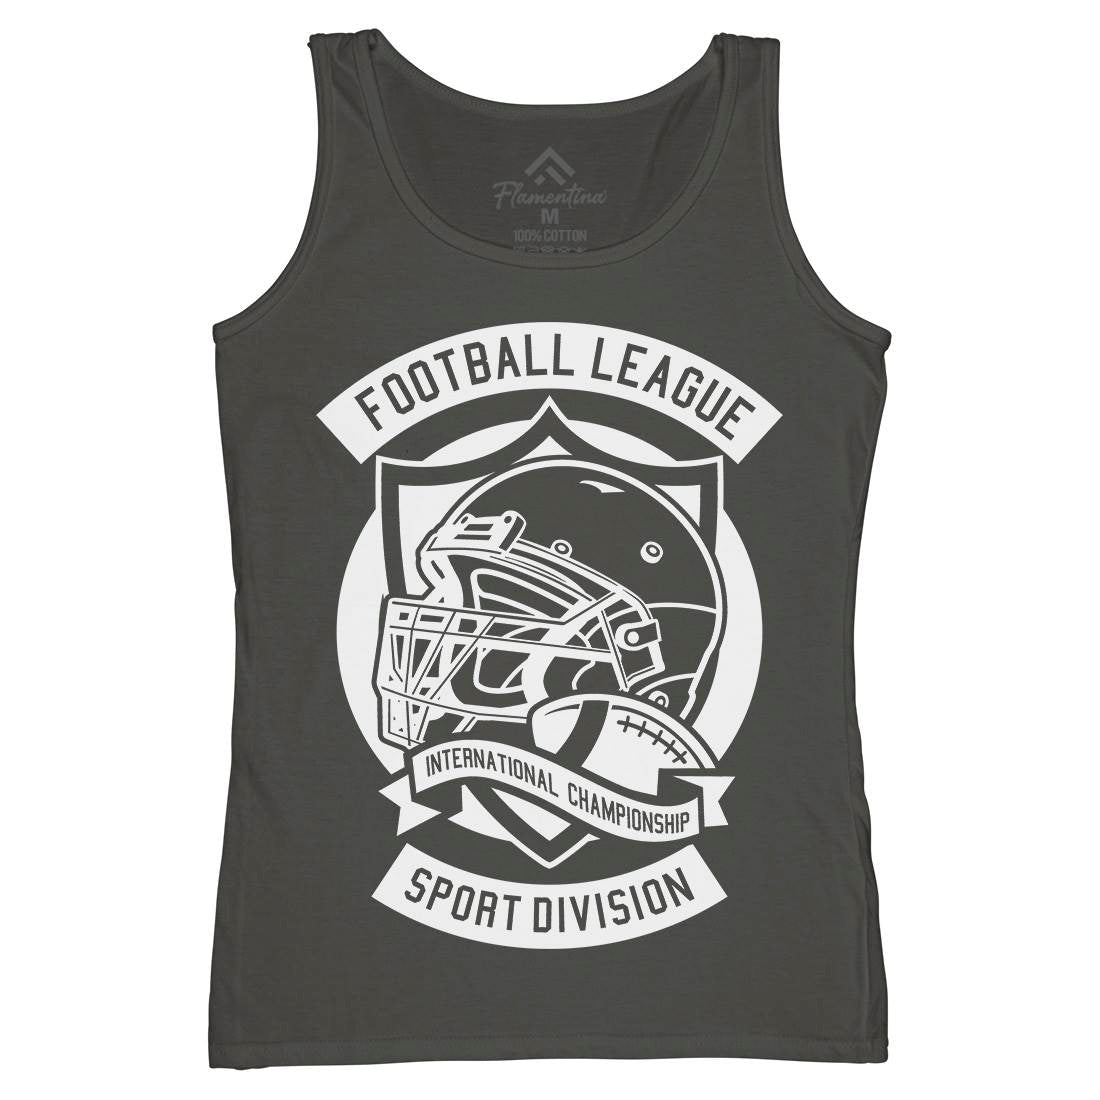 Football League Womens Organic Tank Top Vest Sport A231